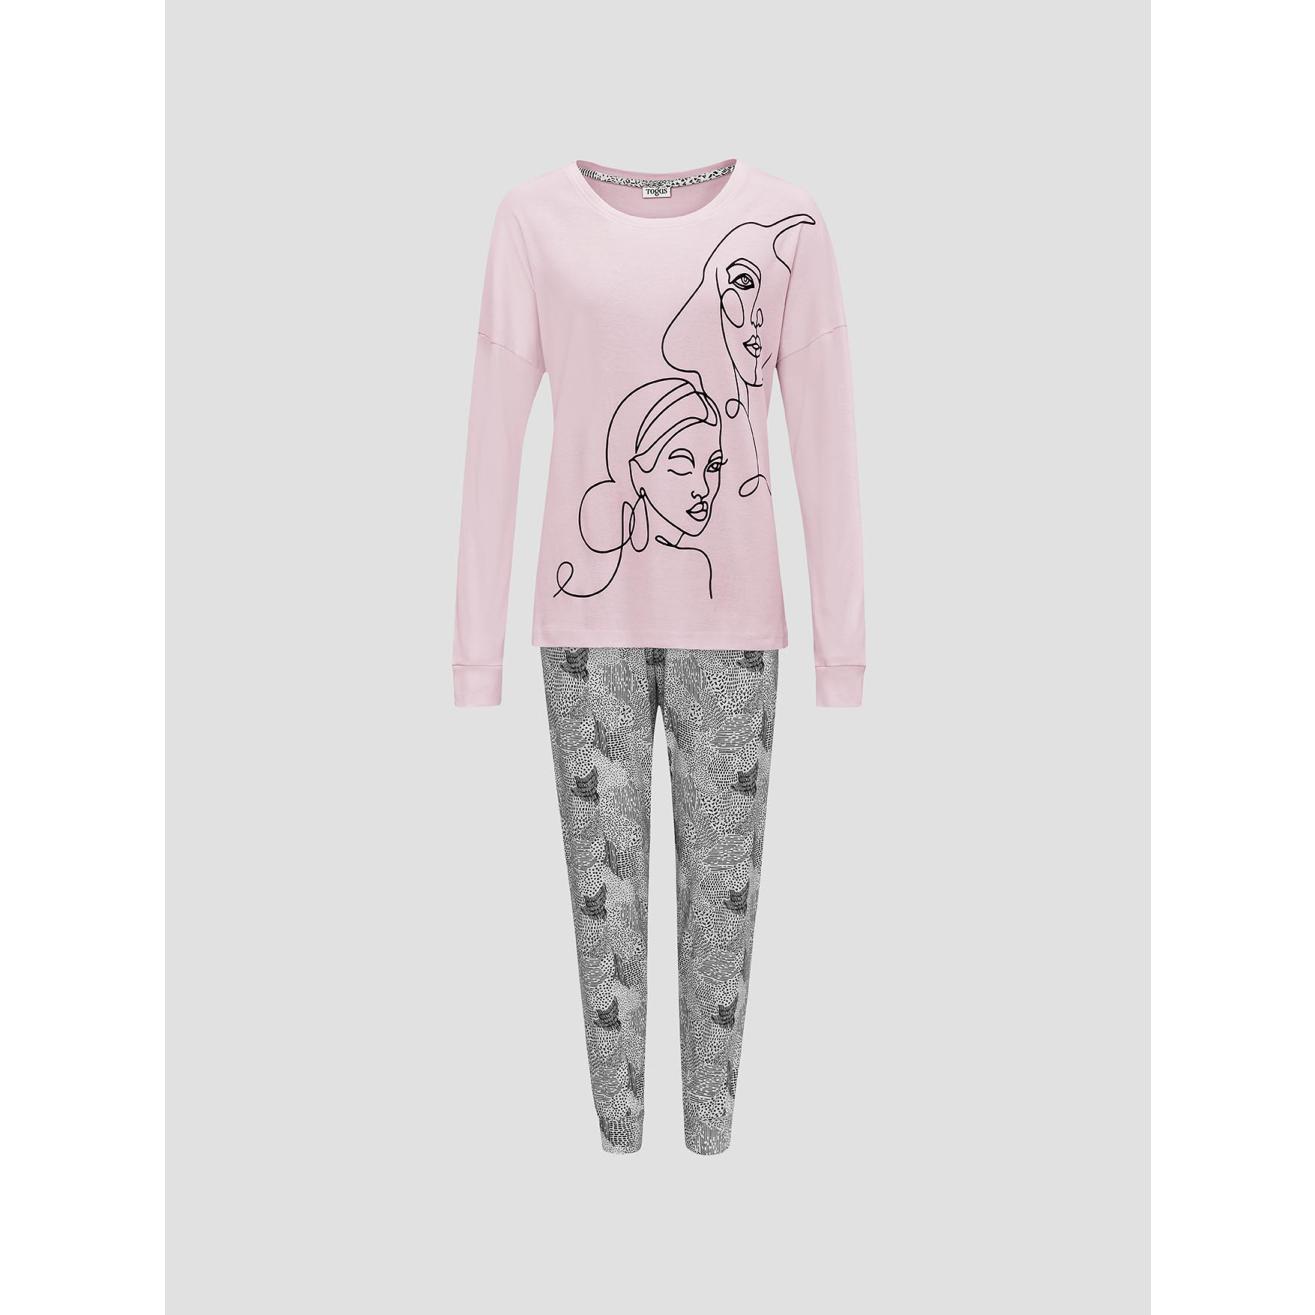 Пижама для девочек Togas Teens Кэрри розово-серая 152 см, цвет розовый, размер 152 см - фото 1